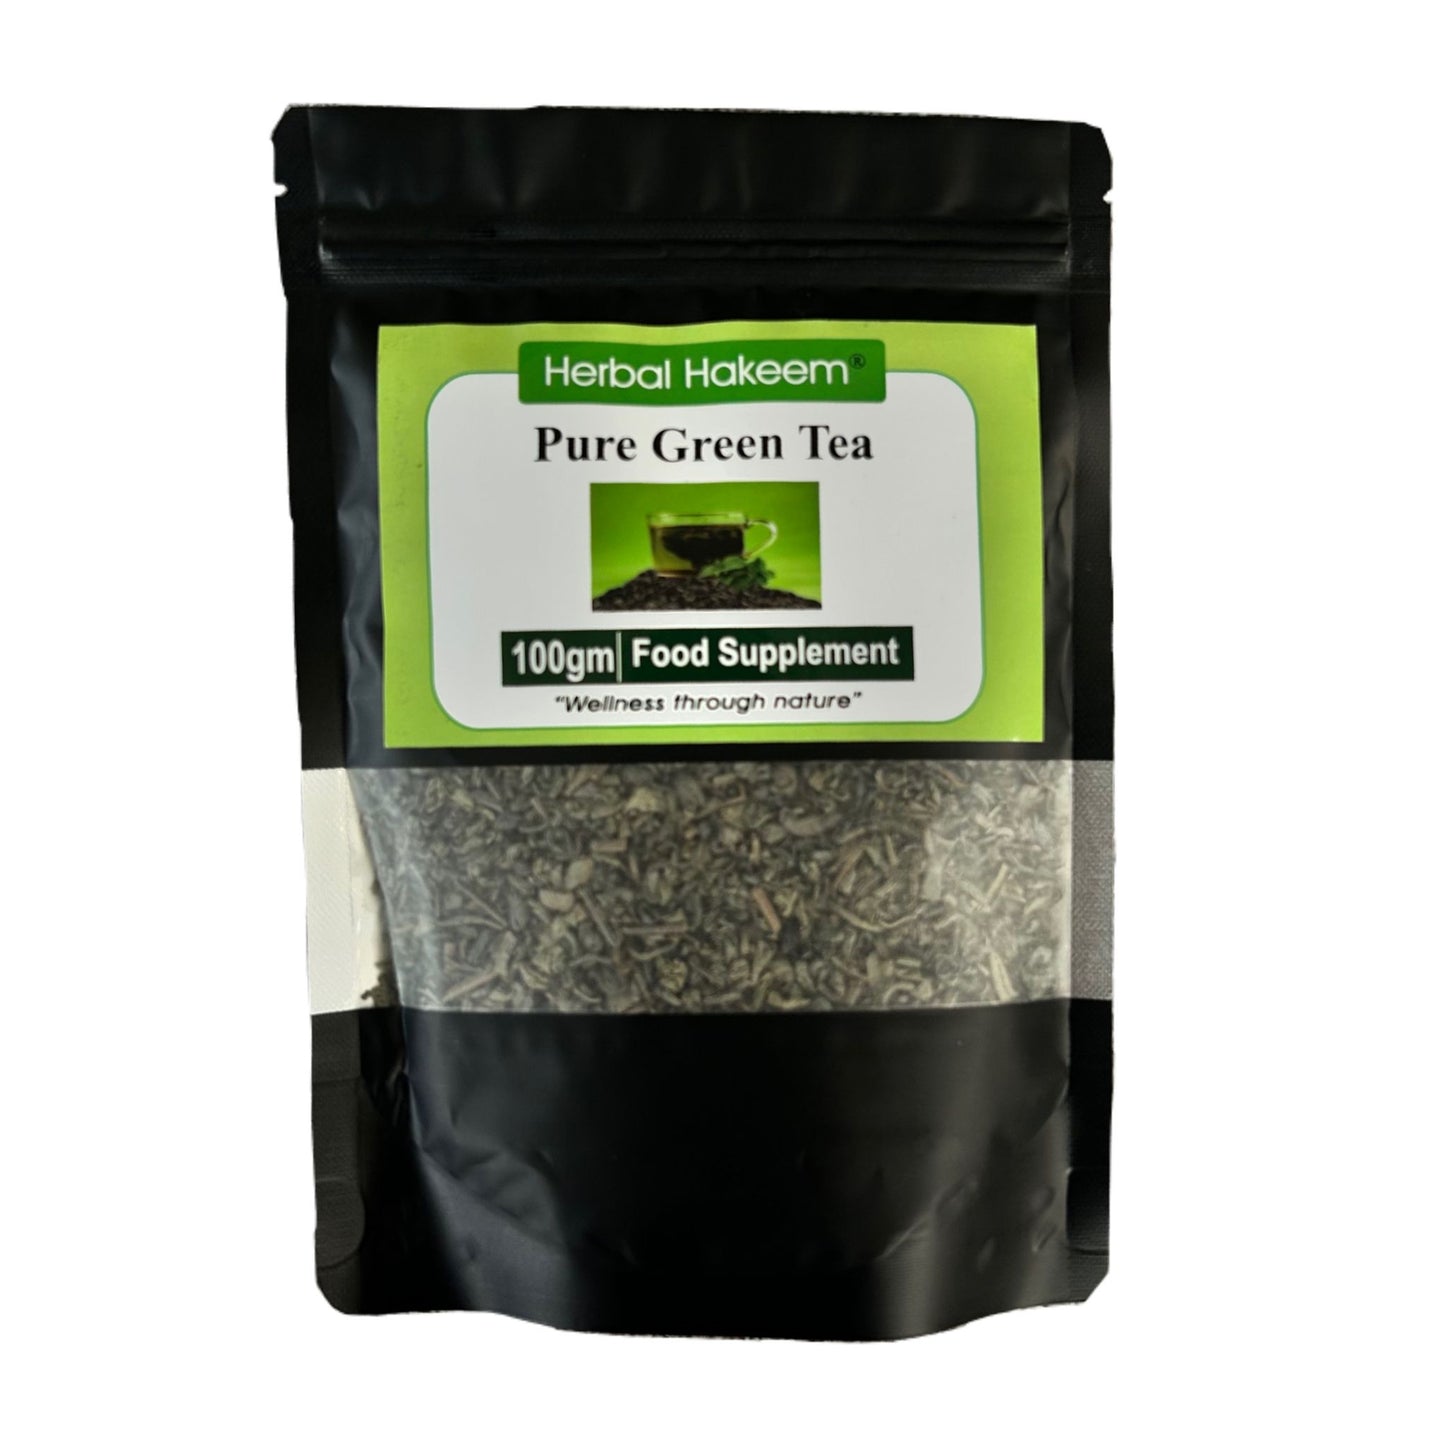 Herbal Hakeem Pure Green Tea 100g Health Supplement